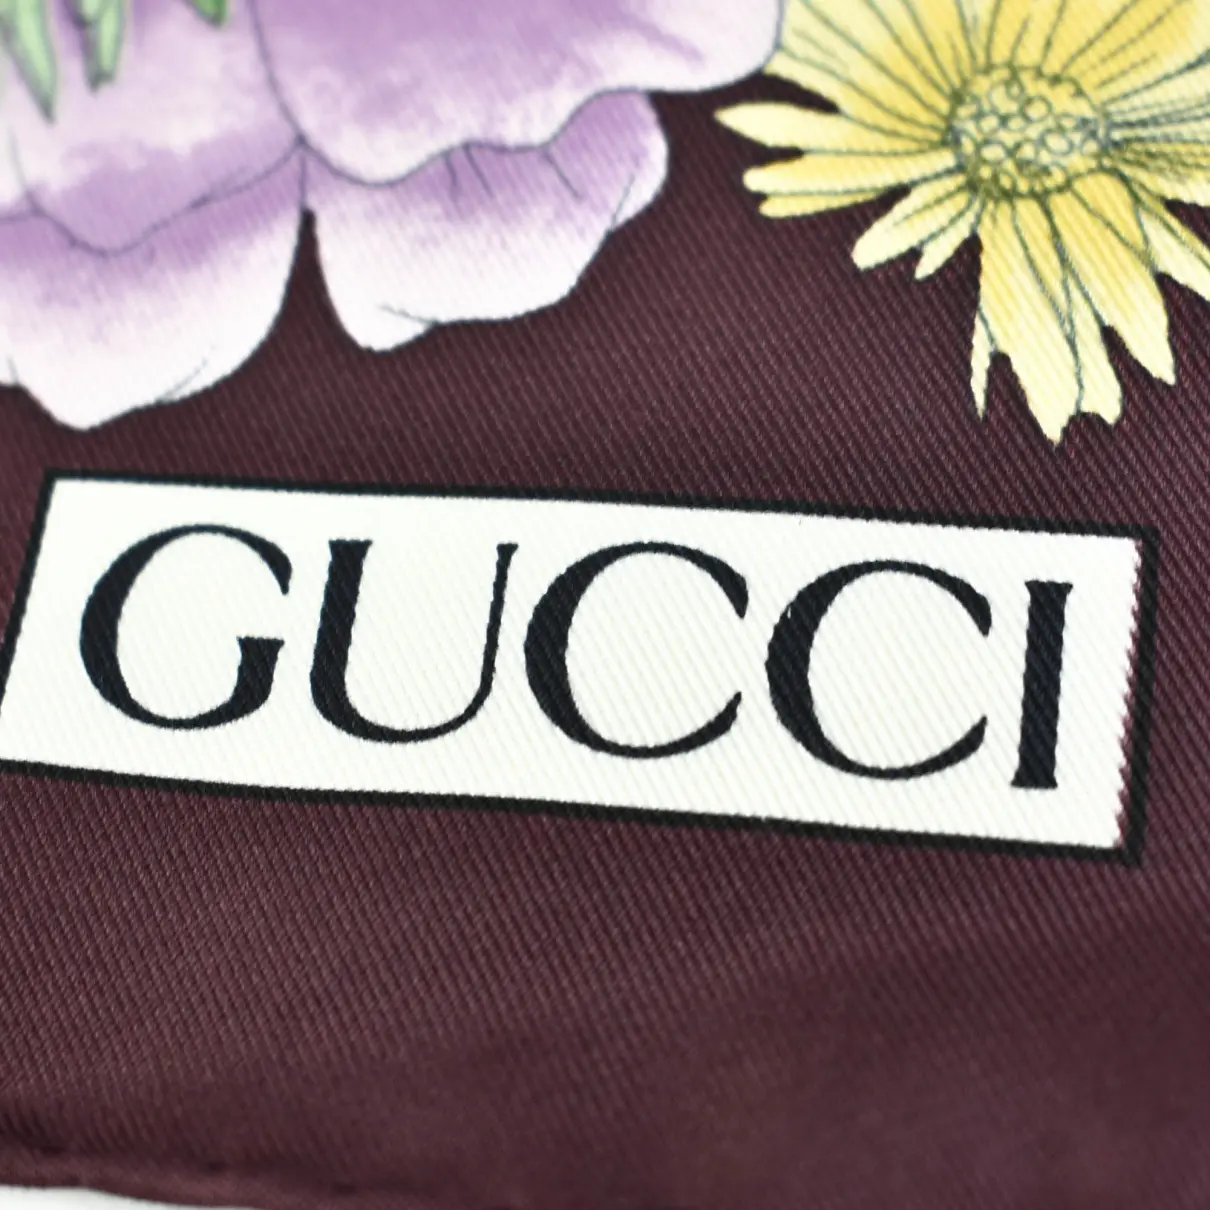 Silk scarf Gucci